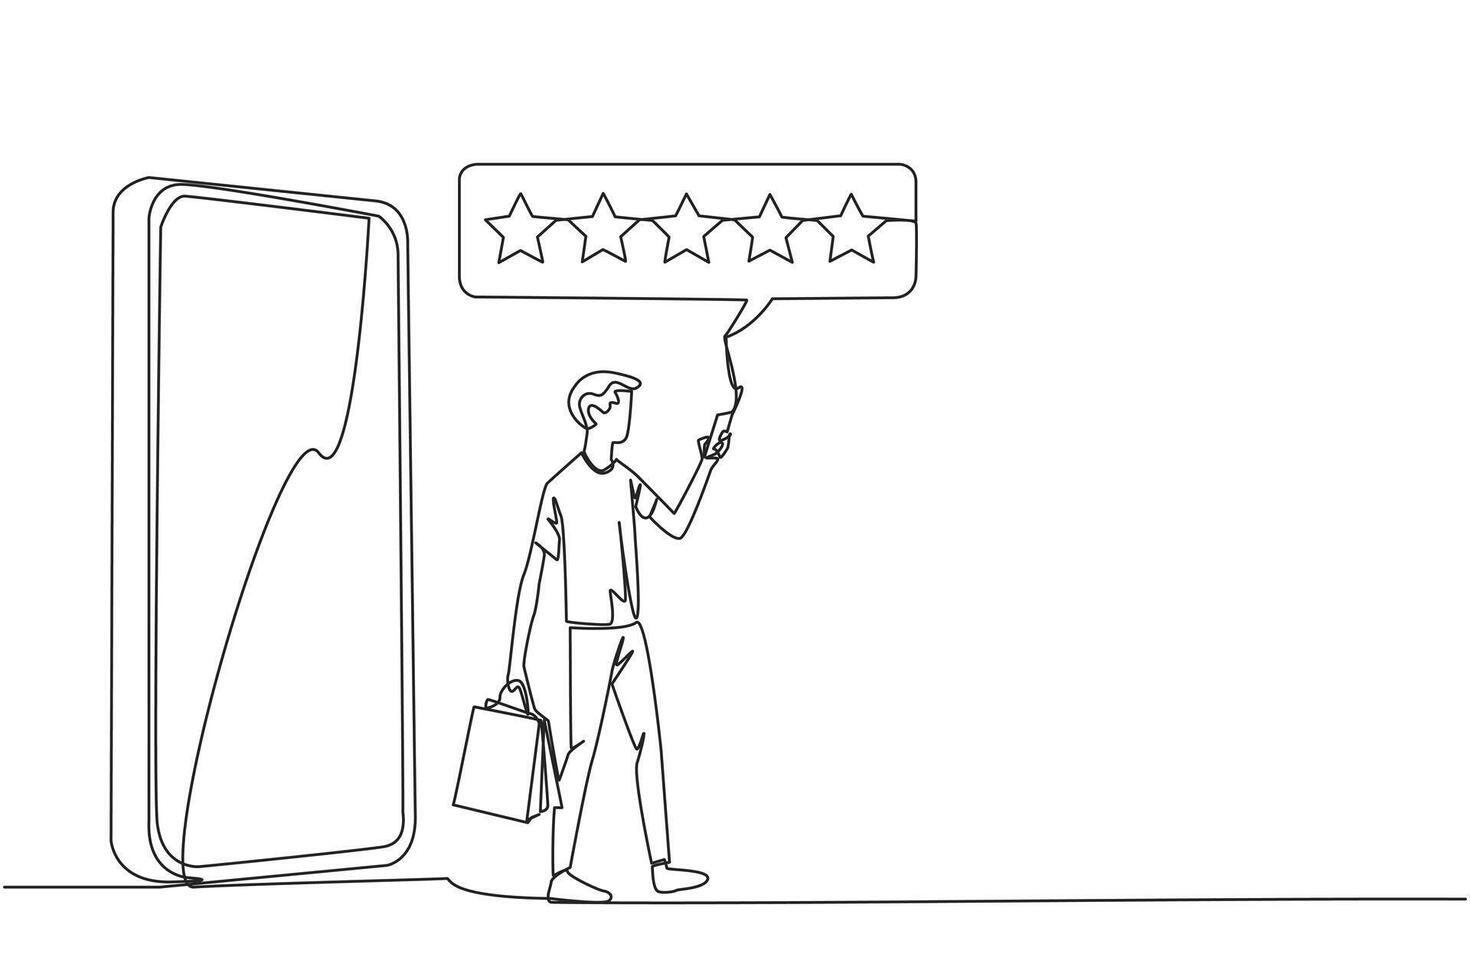 Single einer Linie Zeichnung Mann kommt aus von Riese Smartphone Tragen ein Einkaufen Tasche, das andere Hand Tippen Smartphone. online Einkaufen Konzept. E-Commerce. kontinuierlich Linie Design Grafik Illustration vektor